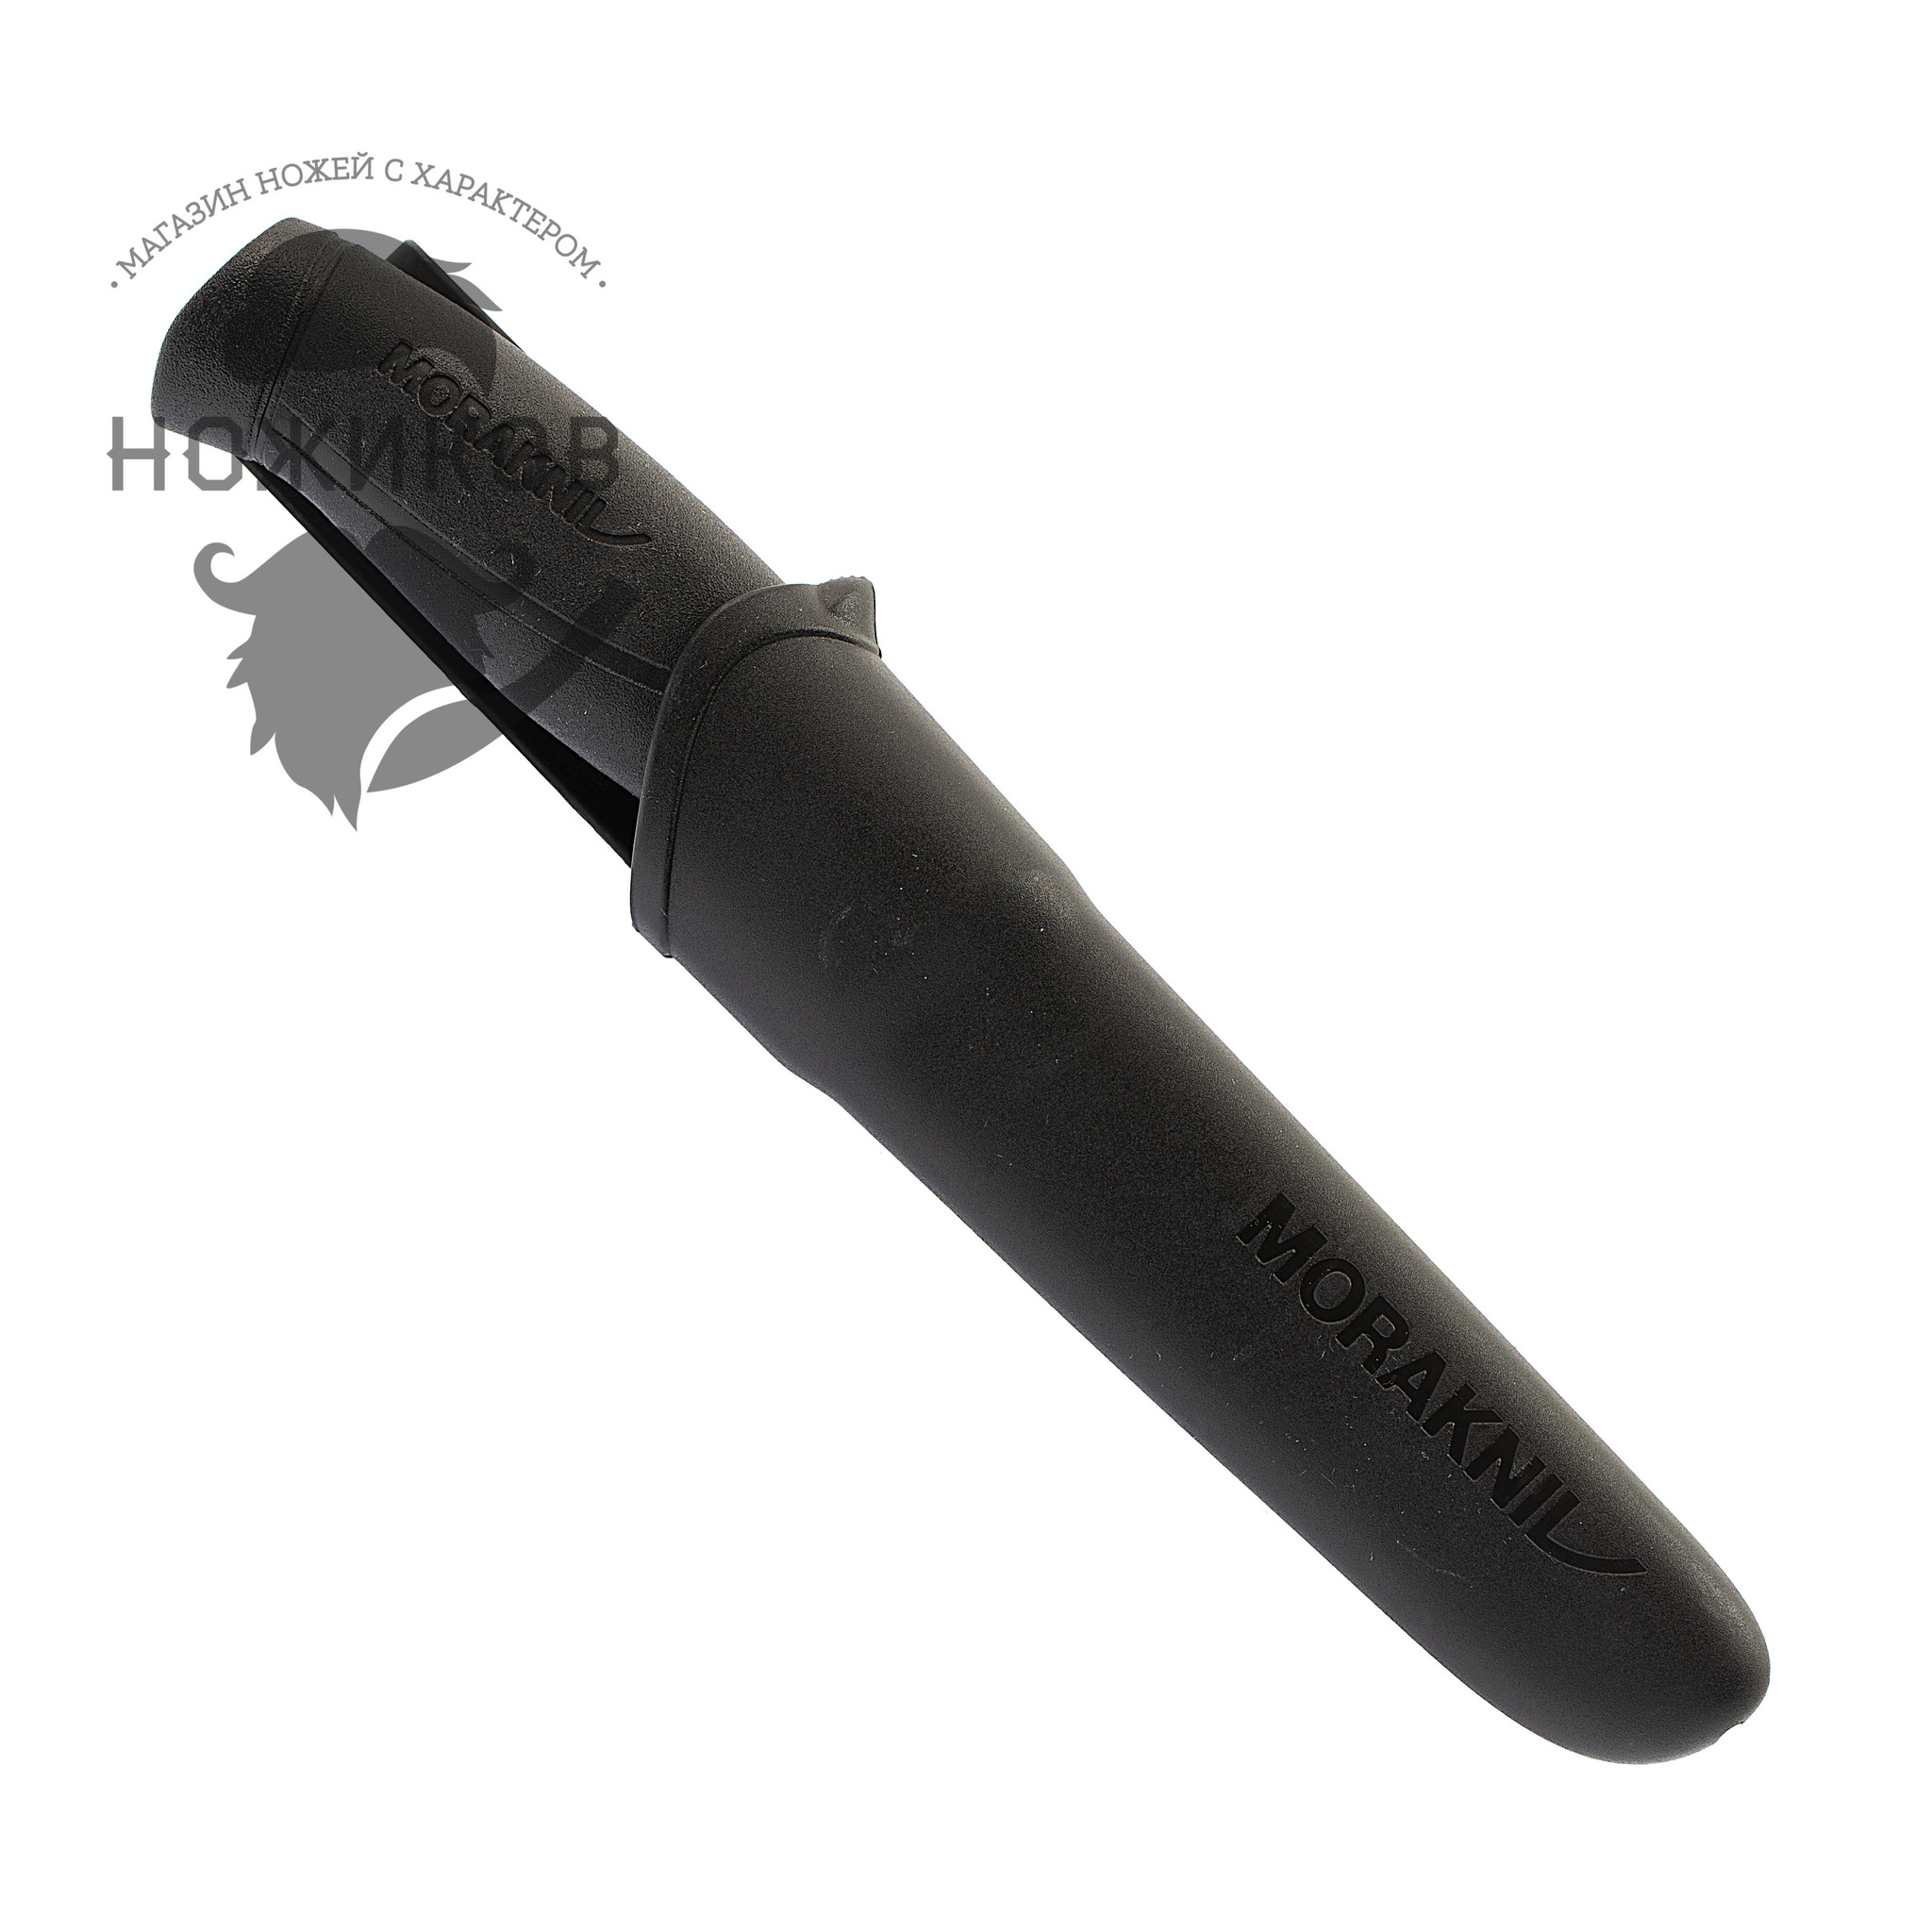 Нож с фиксированным лезвием Morakniv Companion Black, сталь Sandvik 12C27, рукоять пластик/резина - фото 3